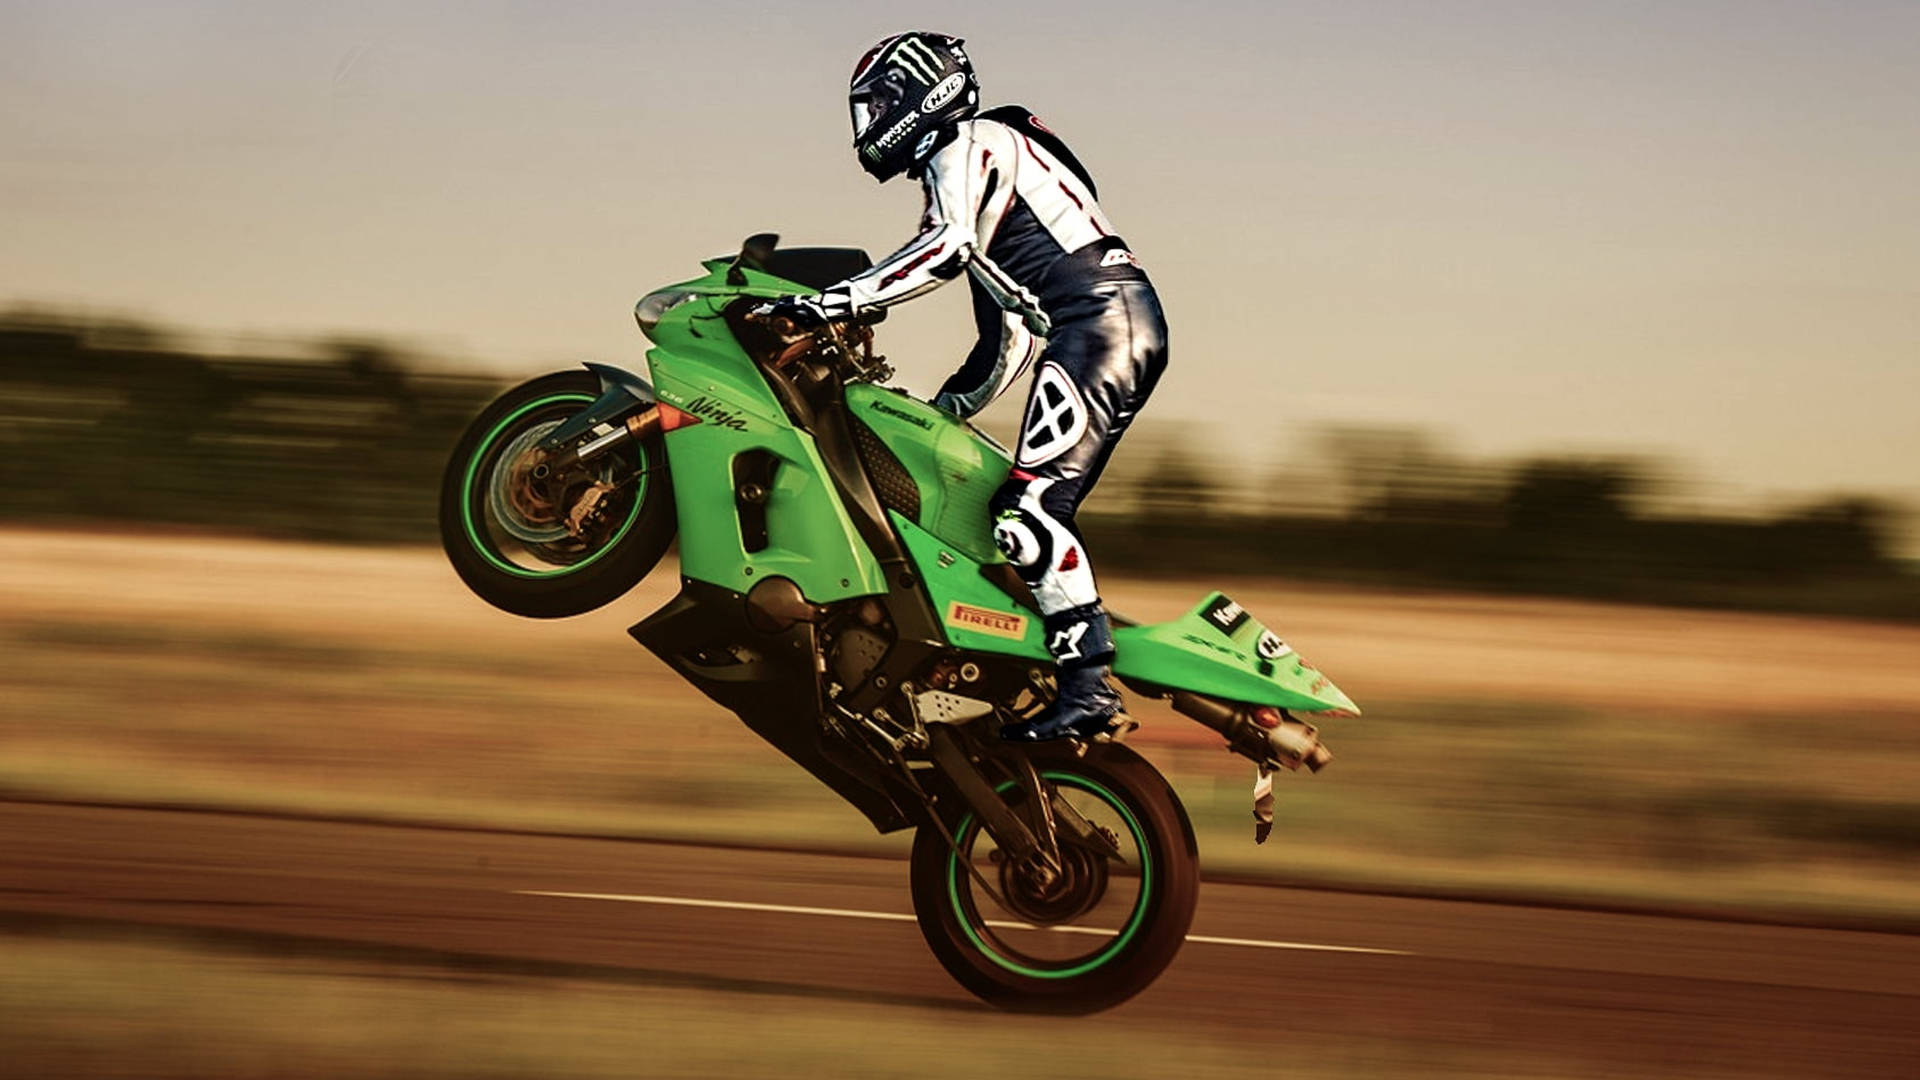 Motocicletaktm Verde Con Acrobacias En 4k. Fondo de pantalla